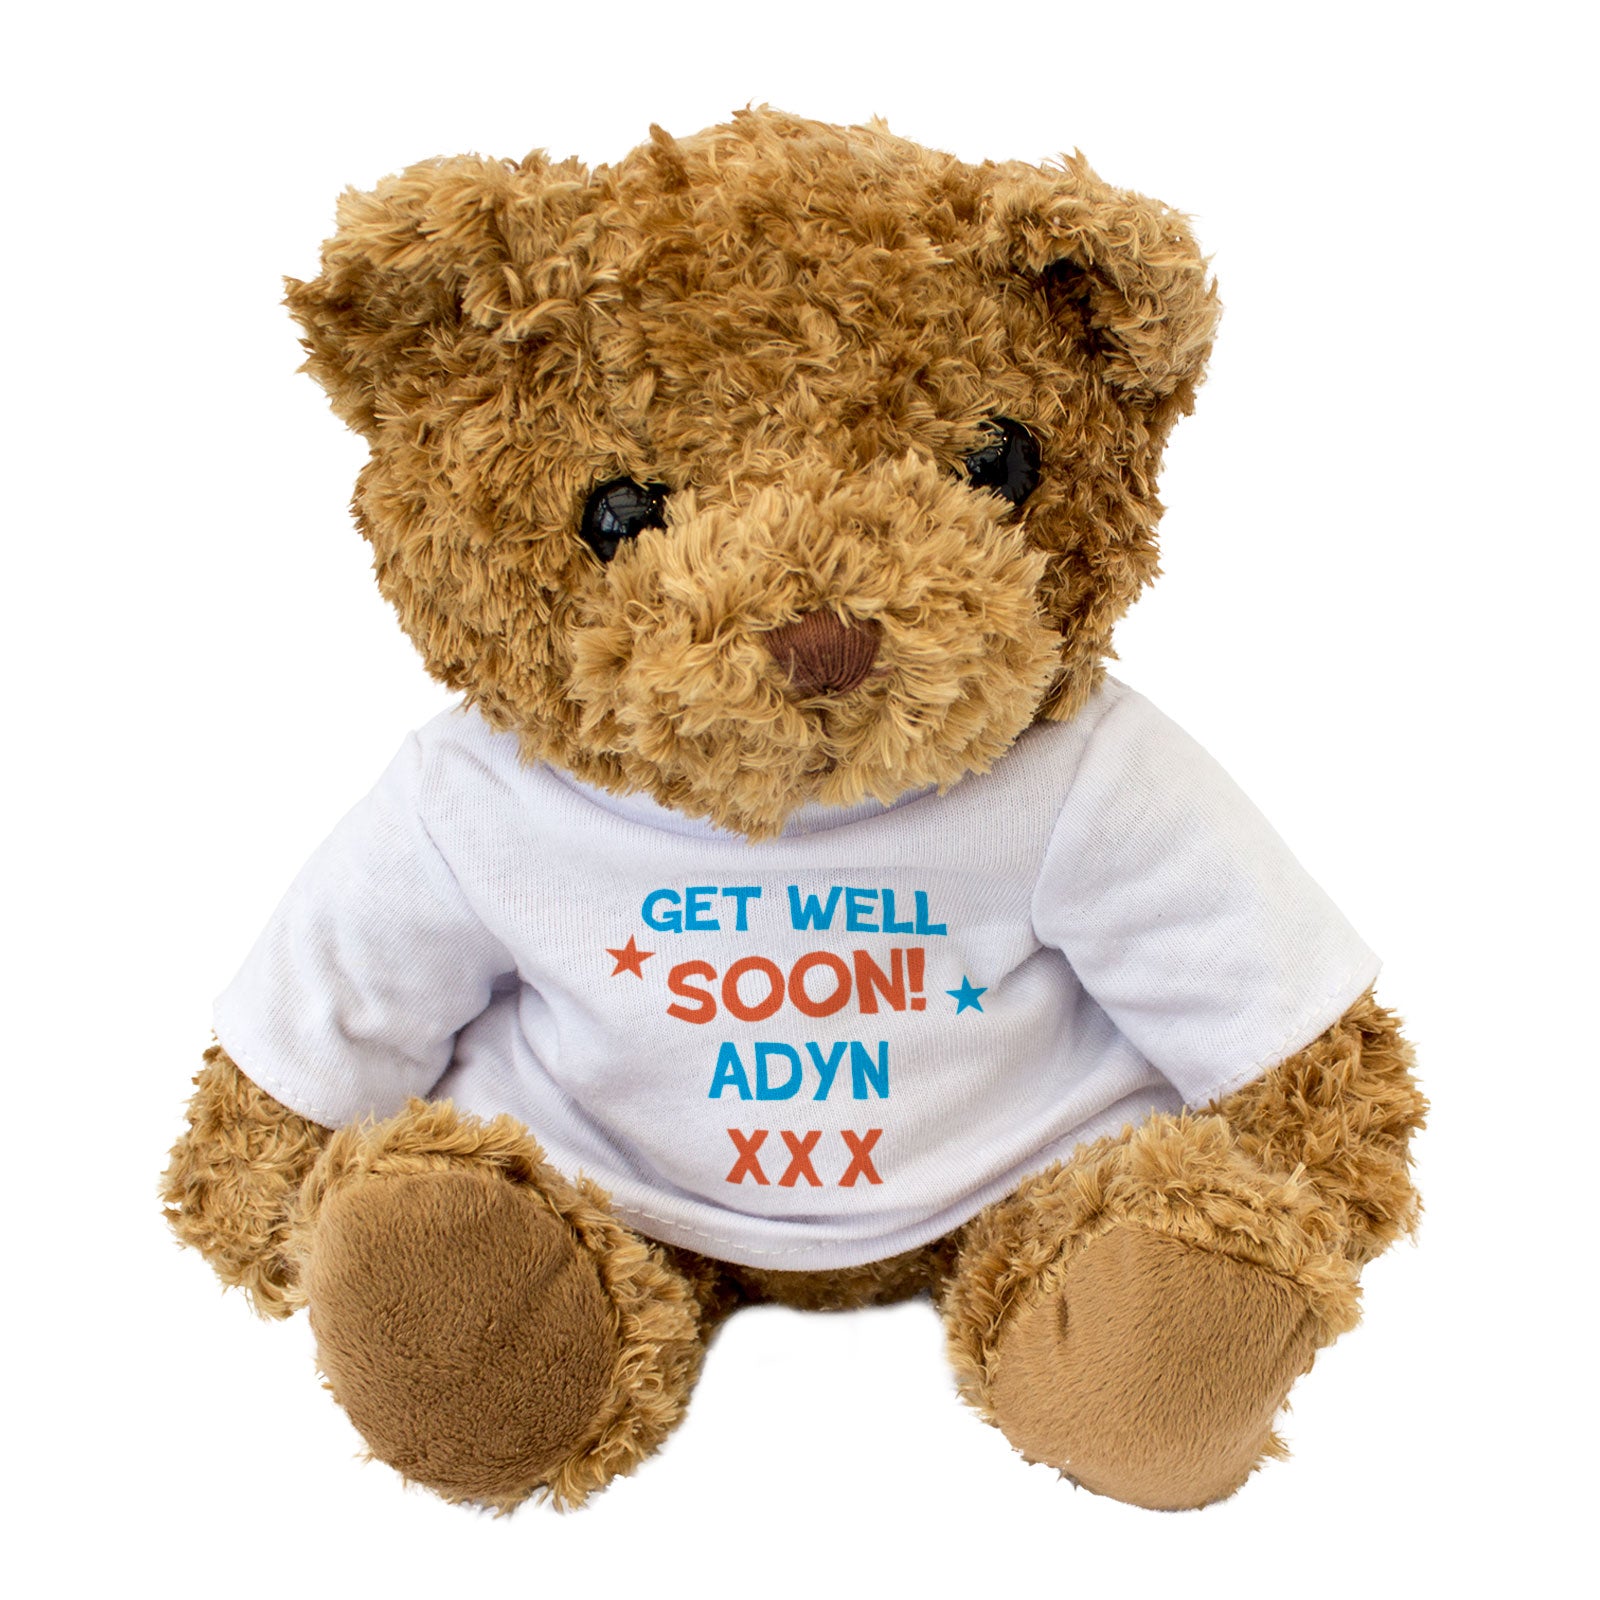 Get Well Soon Adyn - Teddy Bear